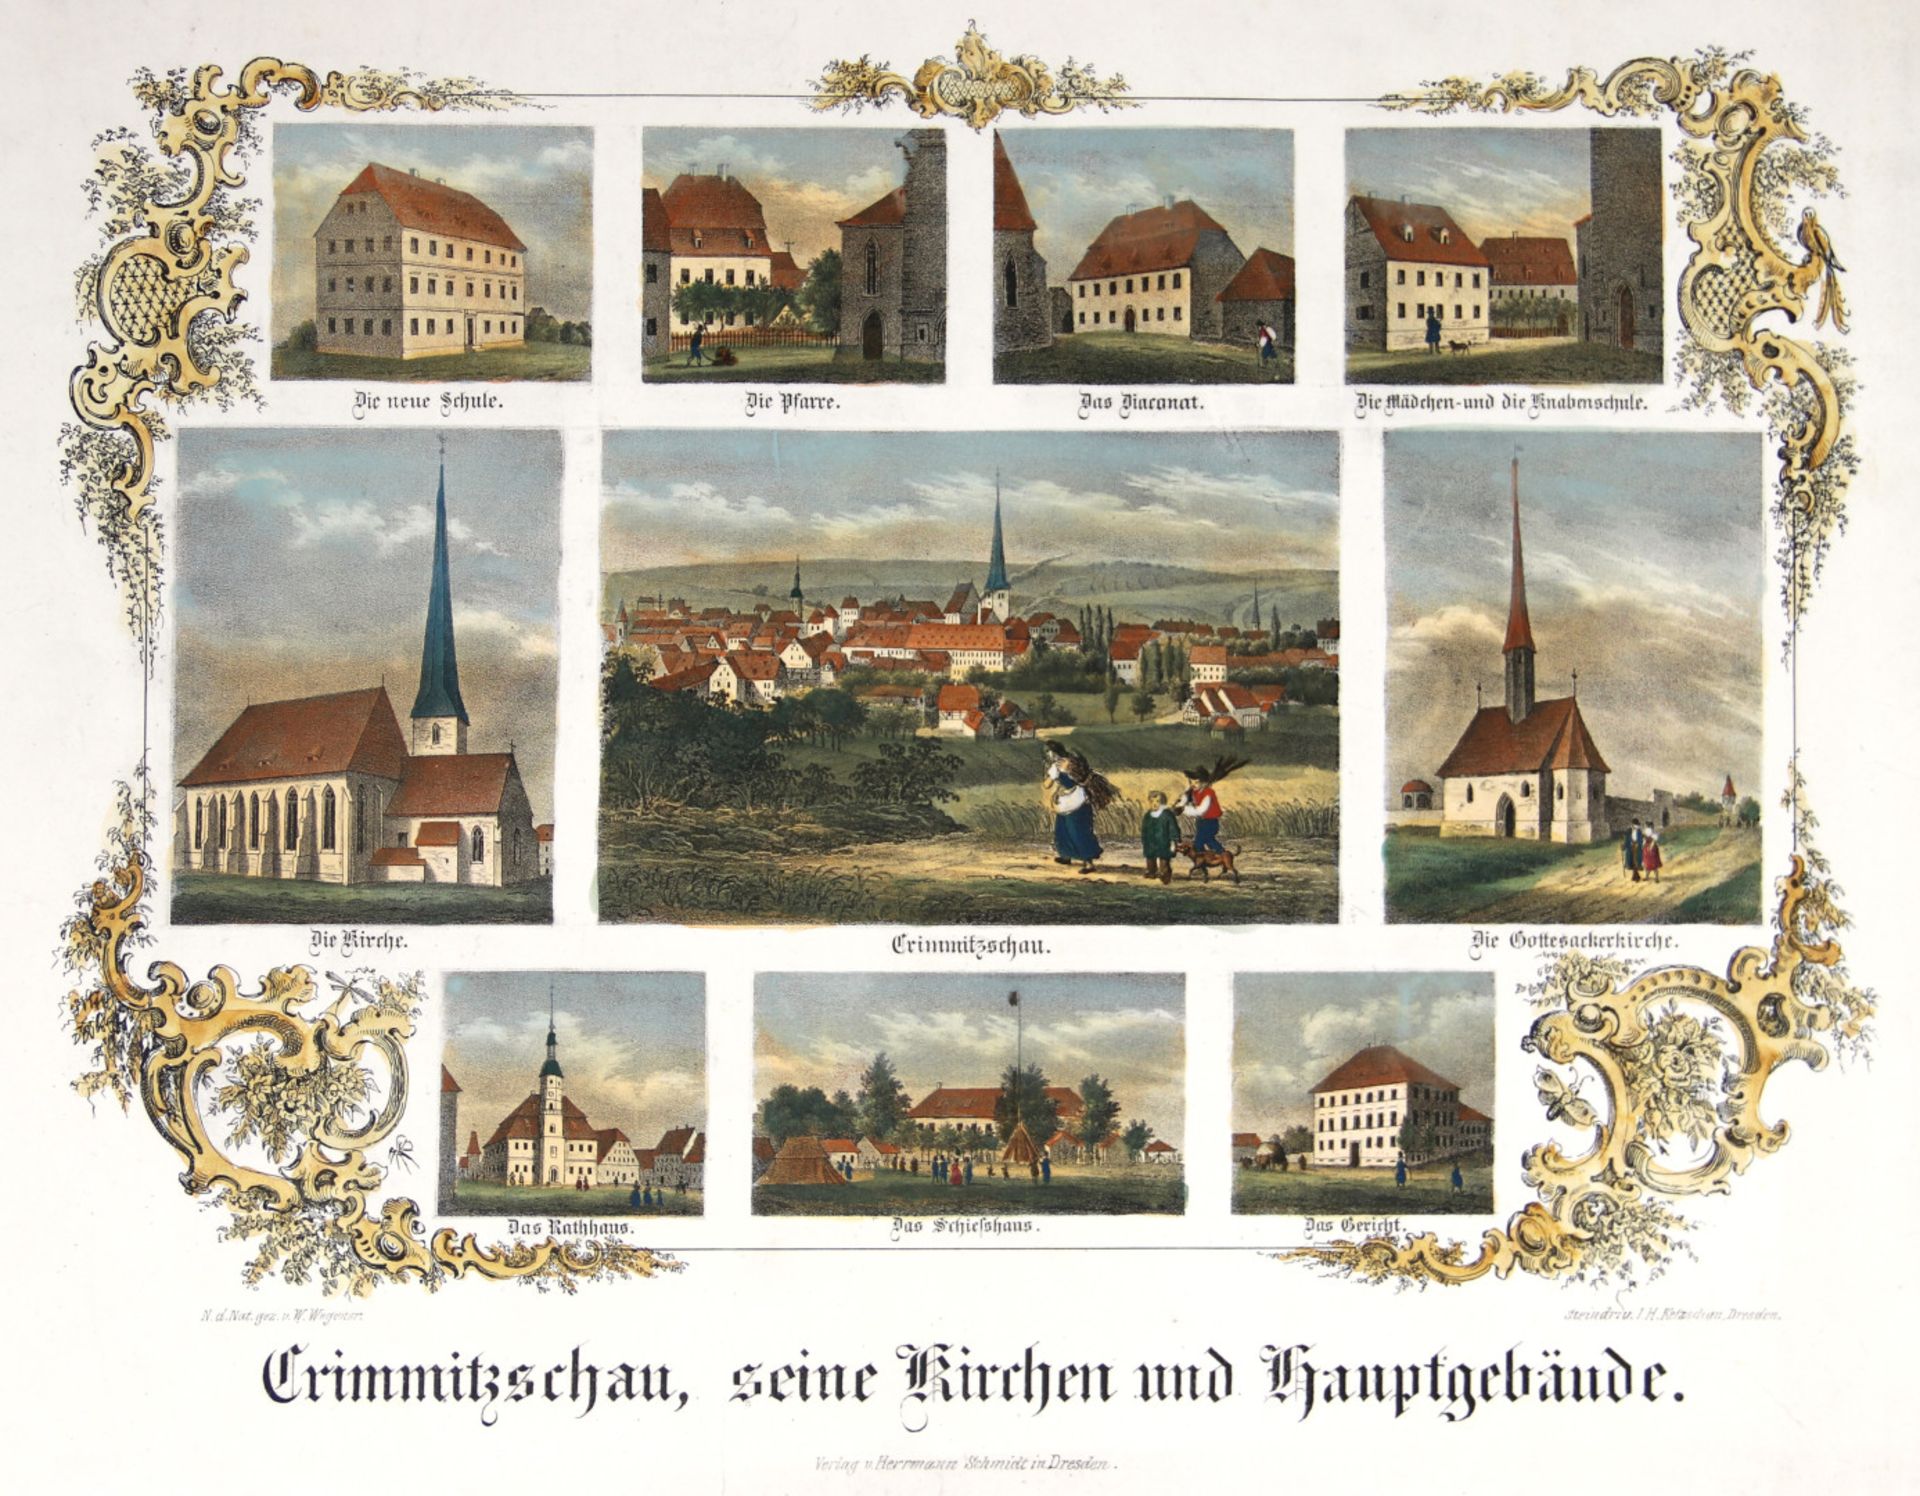 Sachsen. - Crimmitschau. - "Crimmitschau, seine Kirchen und Hauptgebäude".